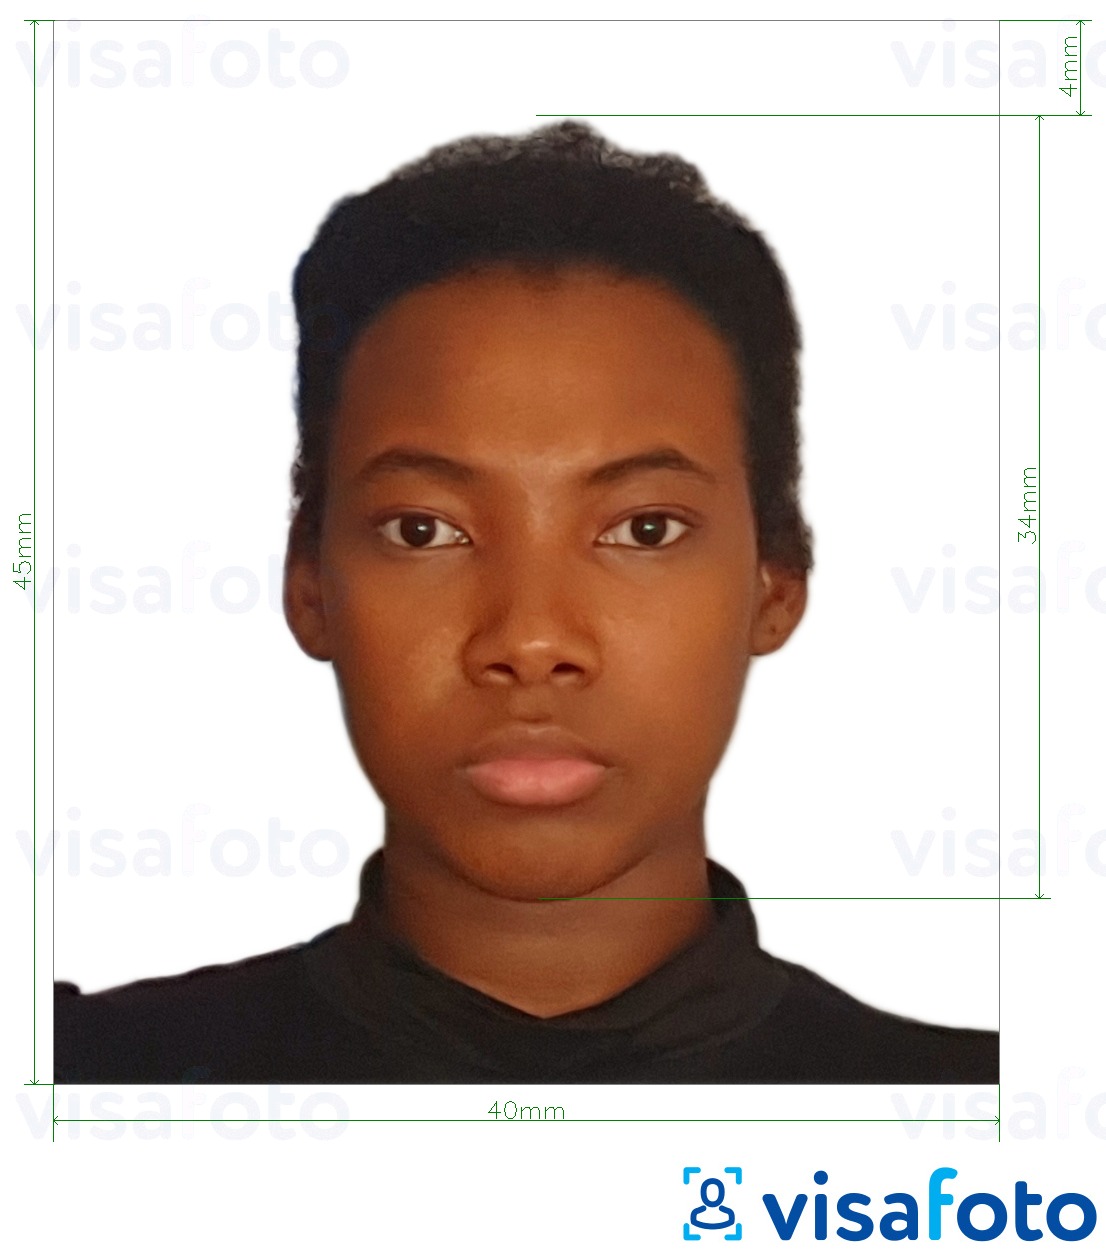 सटीक आकार विनिर्देश के साथ तंजानिया पासपोर्ट 40x45 मिमी (4x4.5 सेमी) के लिए तस्वीर का उदाहरण